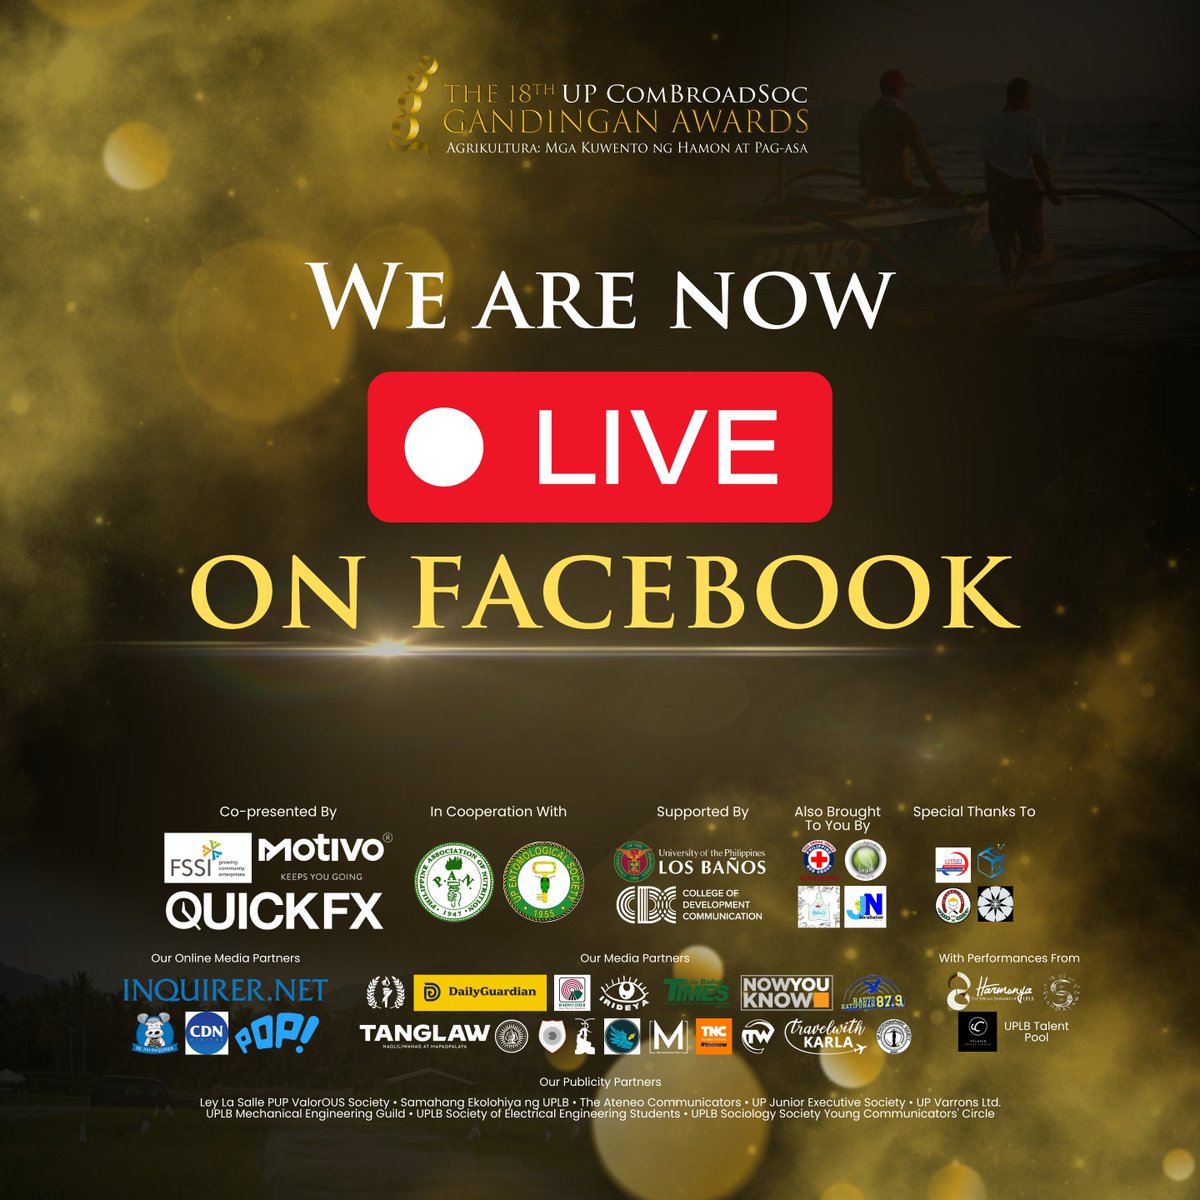 Opisyal nang nagsimula ang 18th UP ComBroadSoc Gandingan Awards. Para sa real-time updates, narito ang Facebook live stream: facebook.com/share/v/Sme3dG… #Gandingan2024 #GandinganAwards